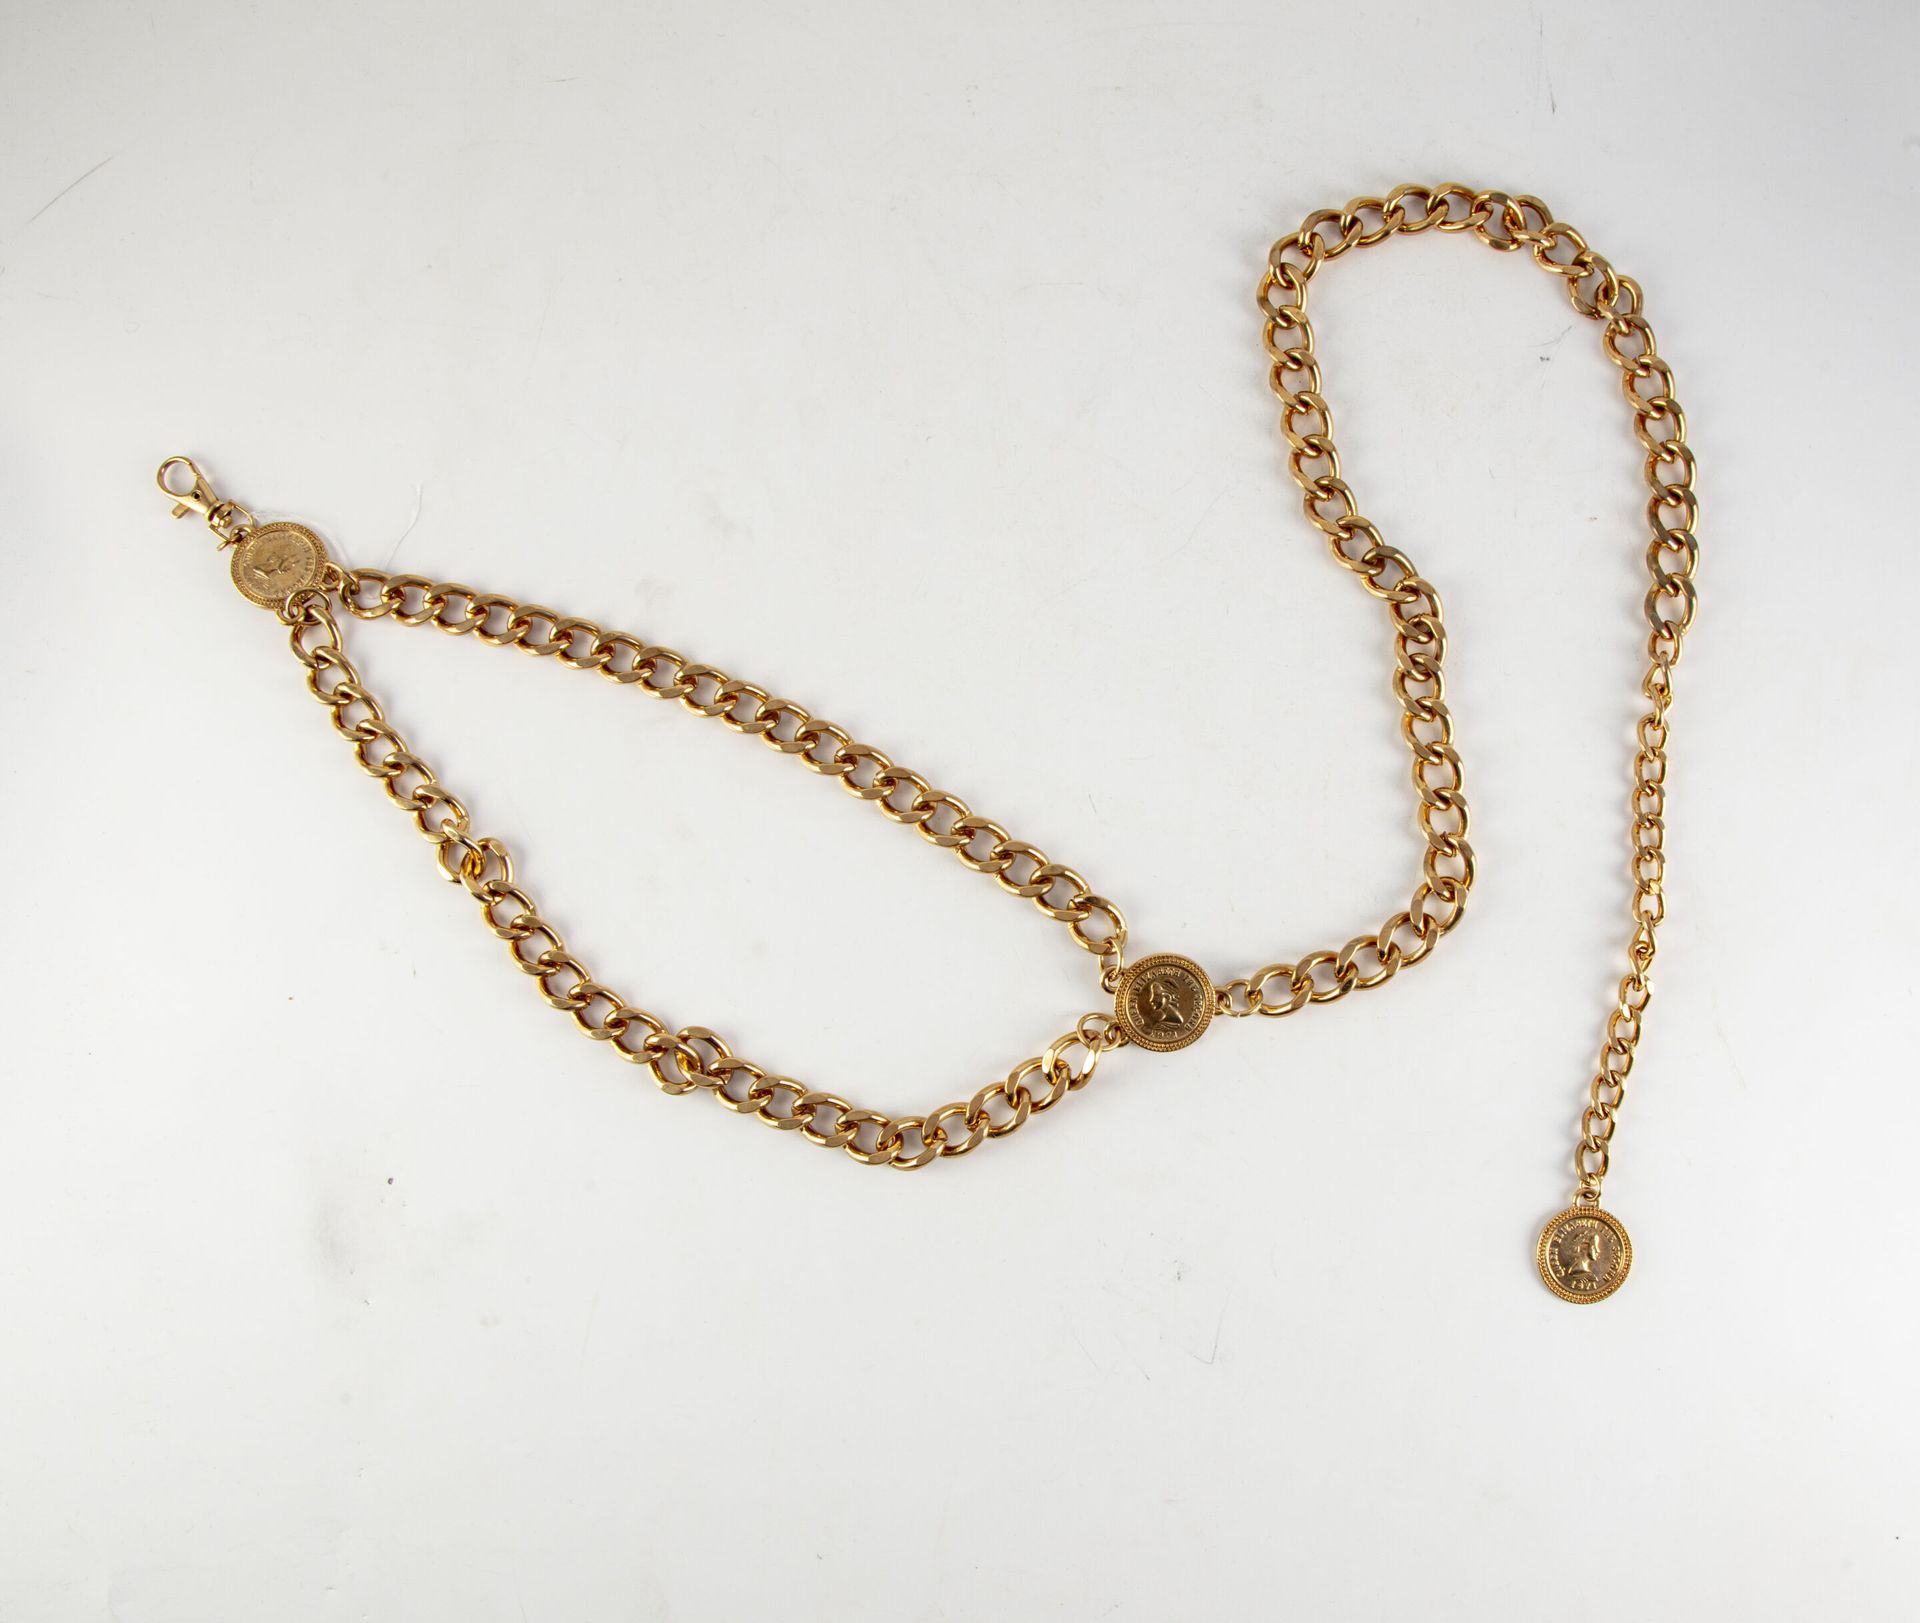 Null 鎏金金属腰带，有大的链接，装饰有印有女王伊丽莎白二世肖像的奖章
长：116厘米